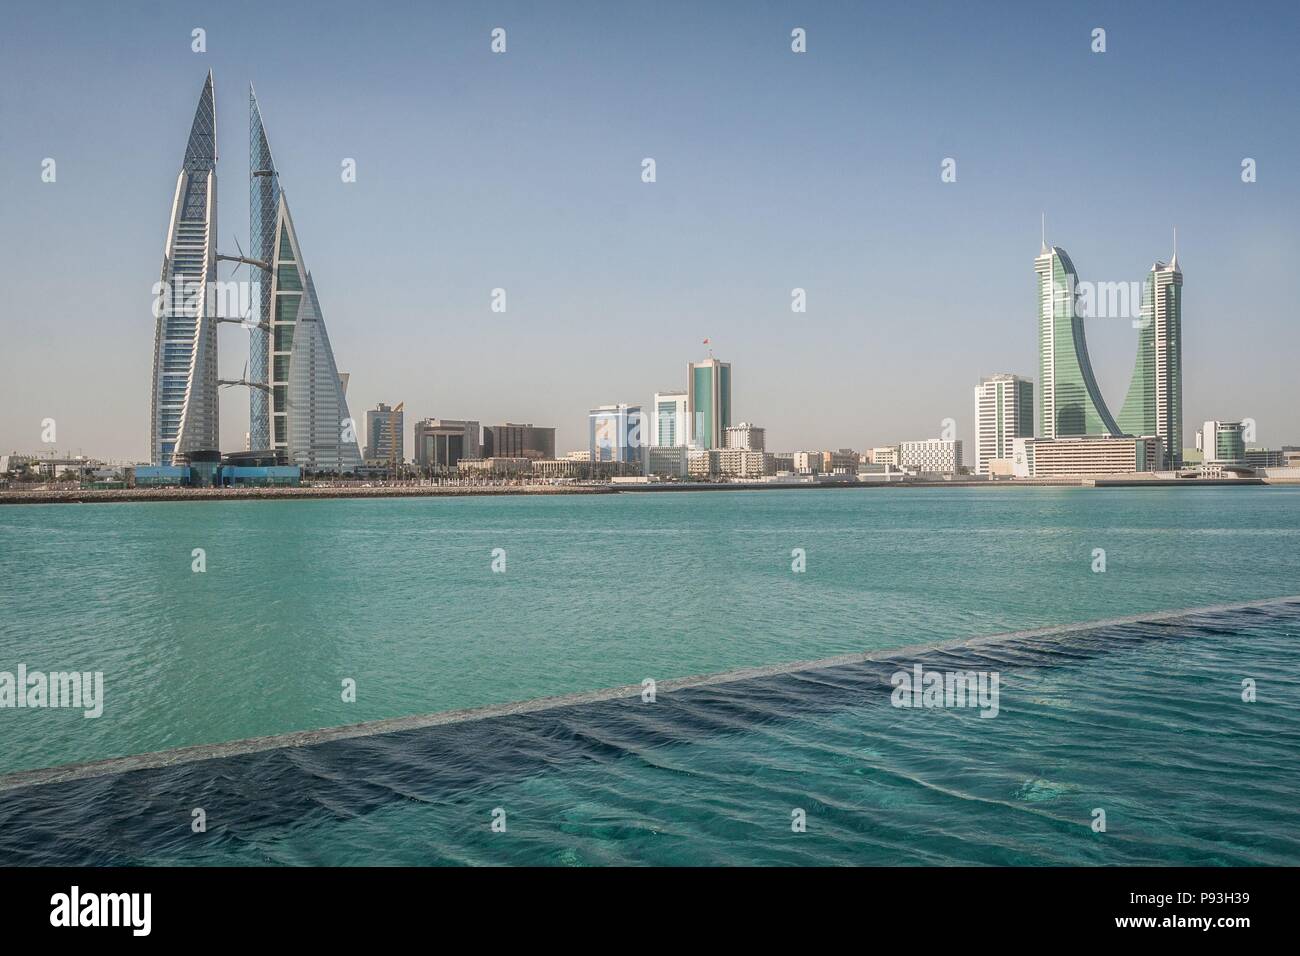 Regno del Bahrein, Golfo Persico, MEDIO ORIENTE Foto Stock